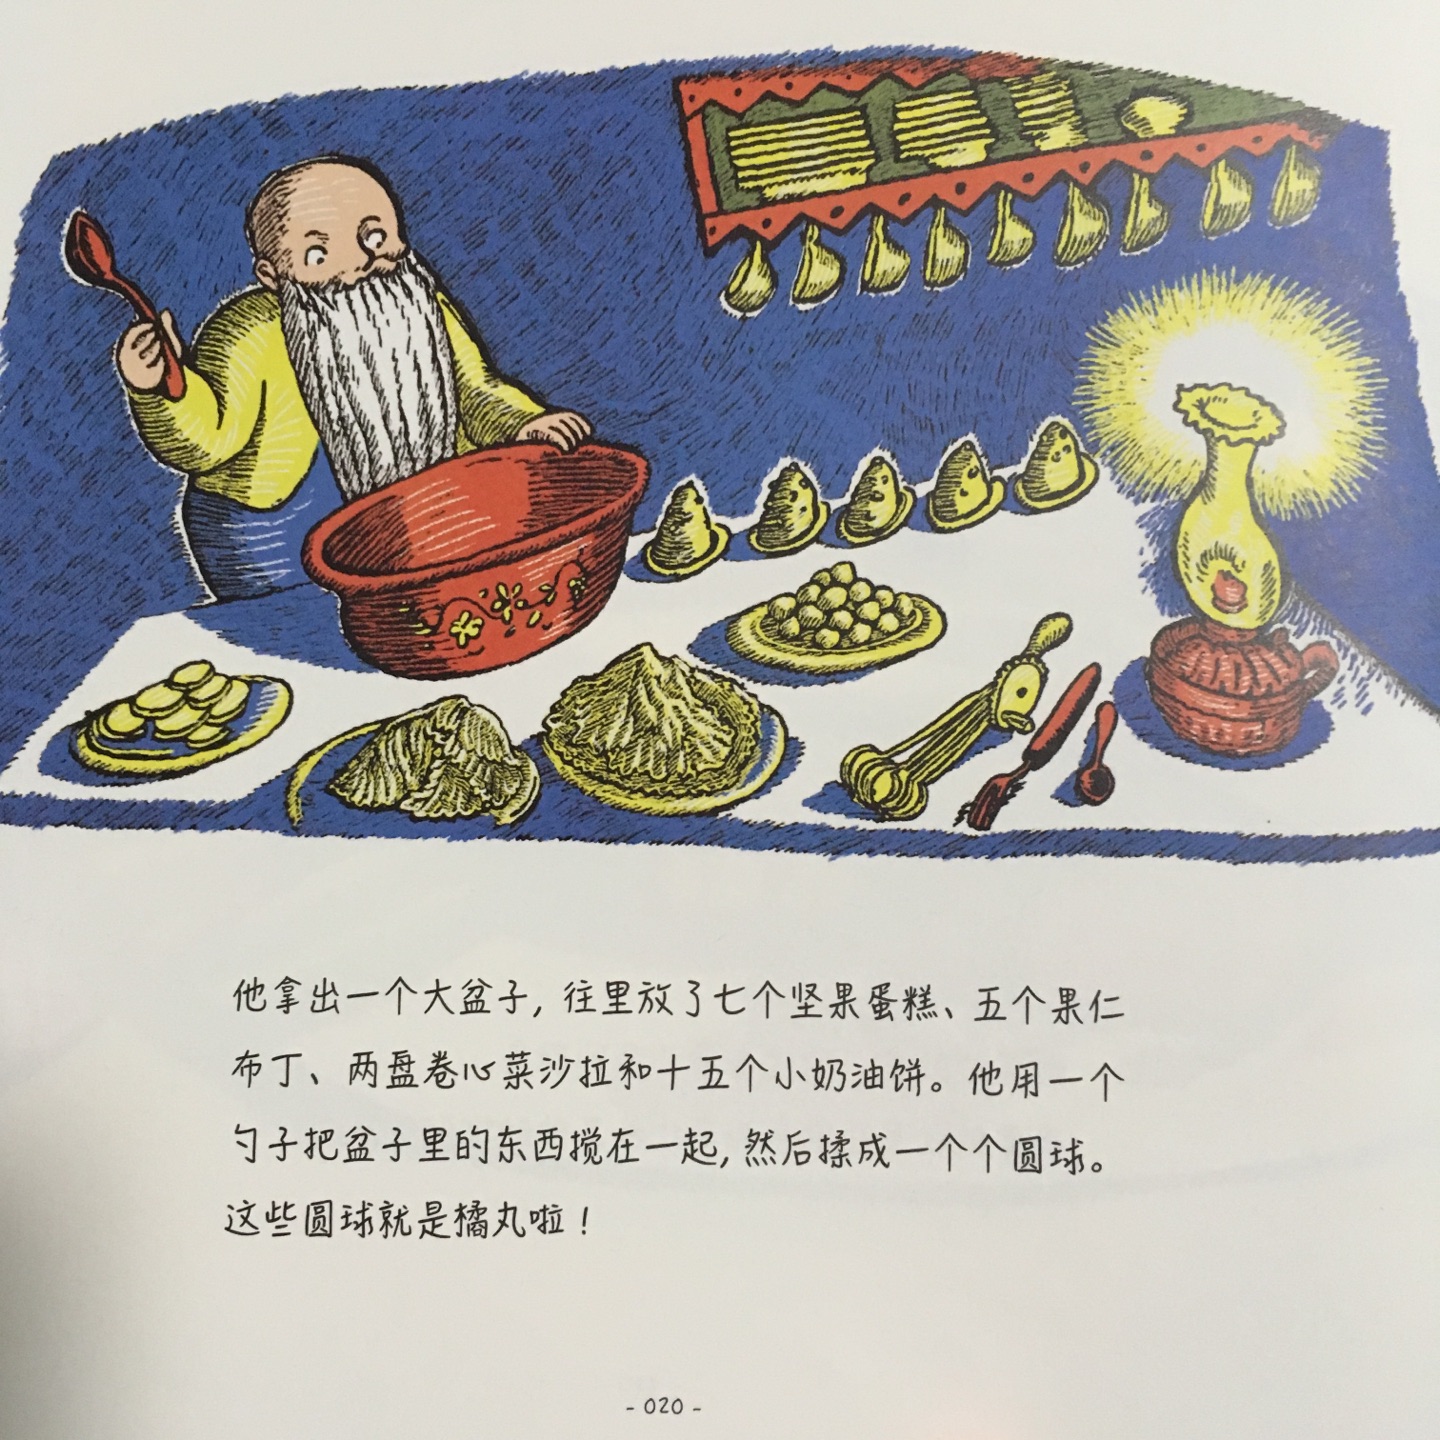 小矮人用智慧组织怪物吃布娃娃的故事，画风温馨，三岁可读。